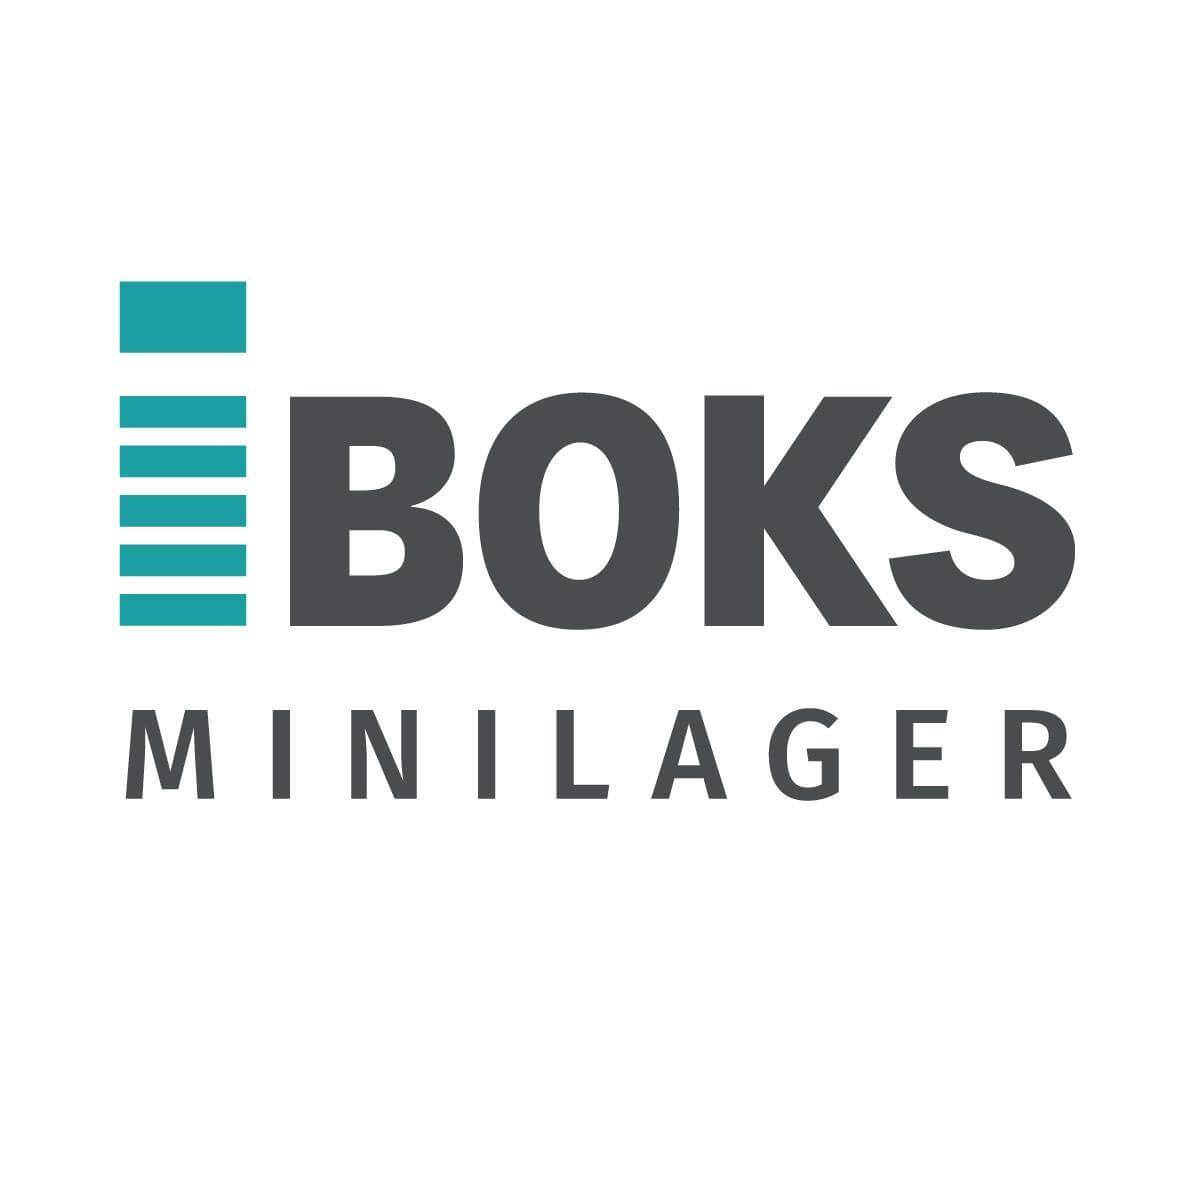 Iboks Minilager